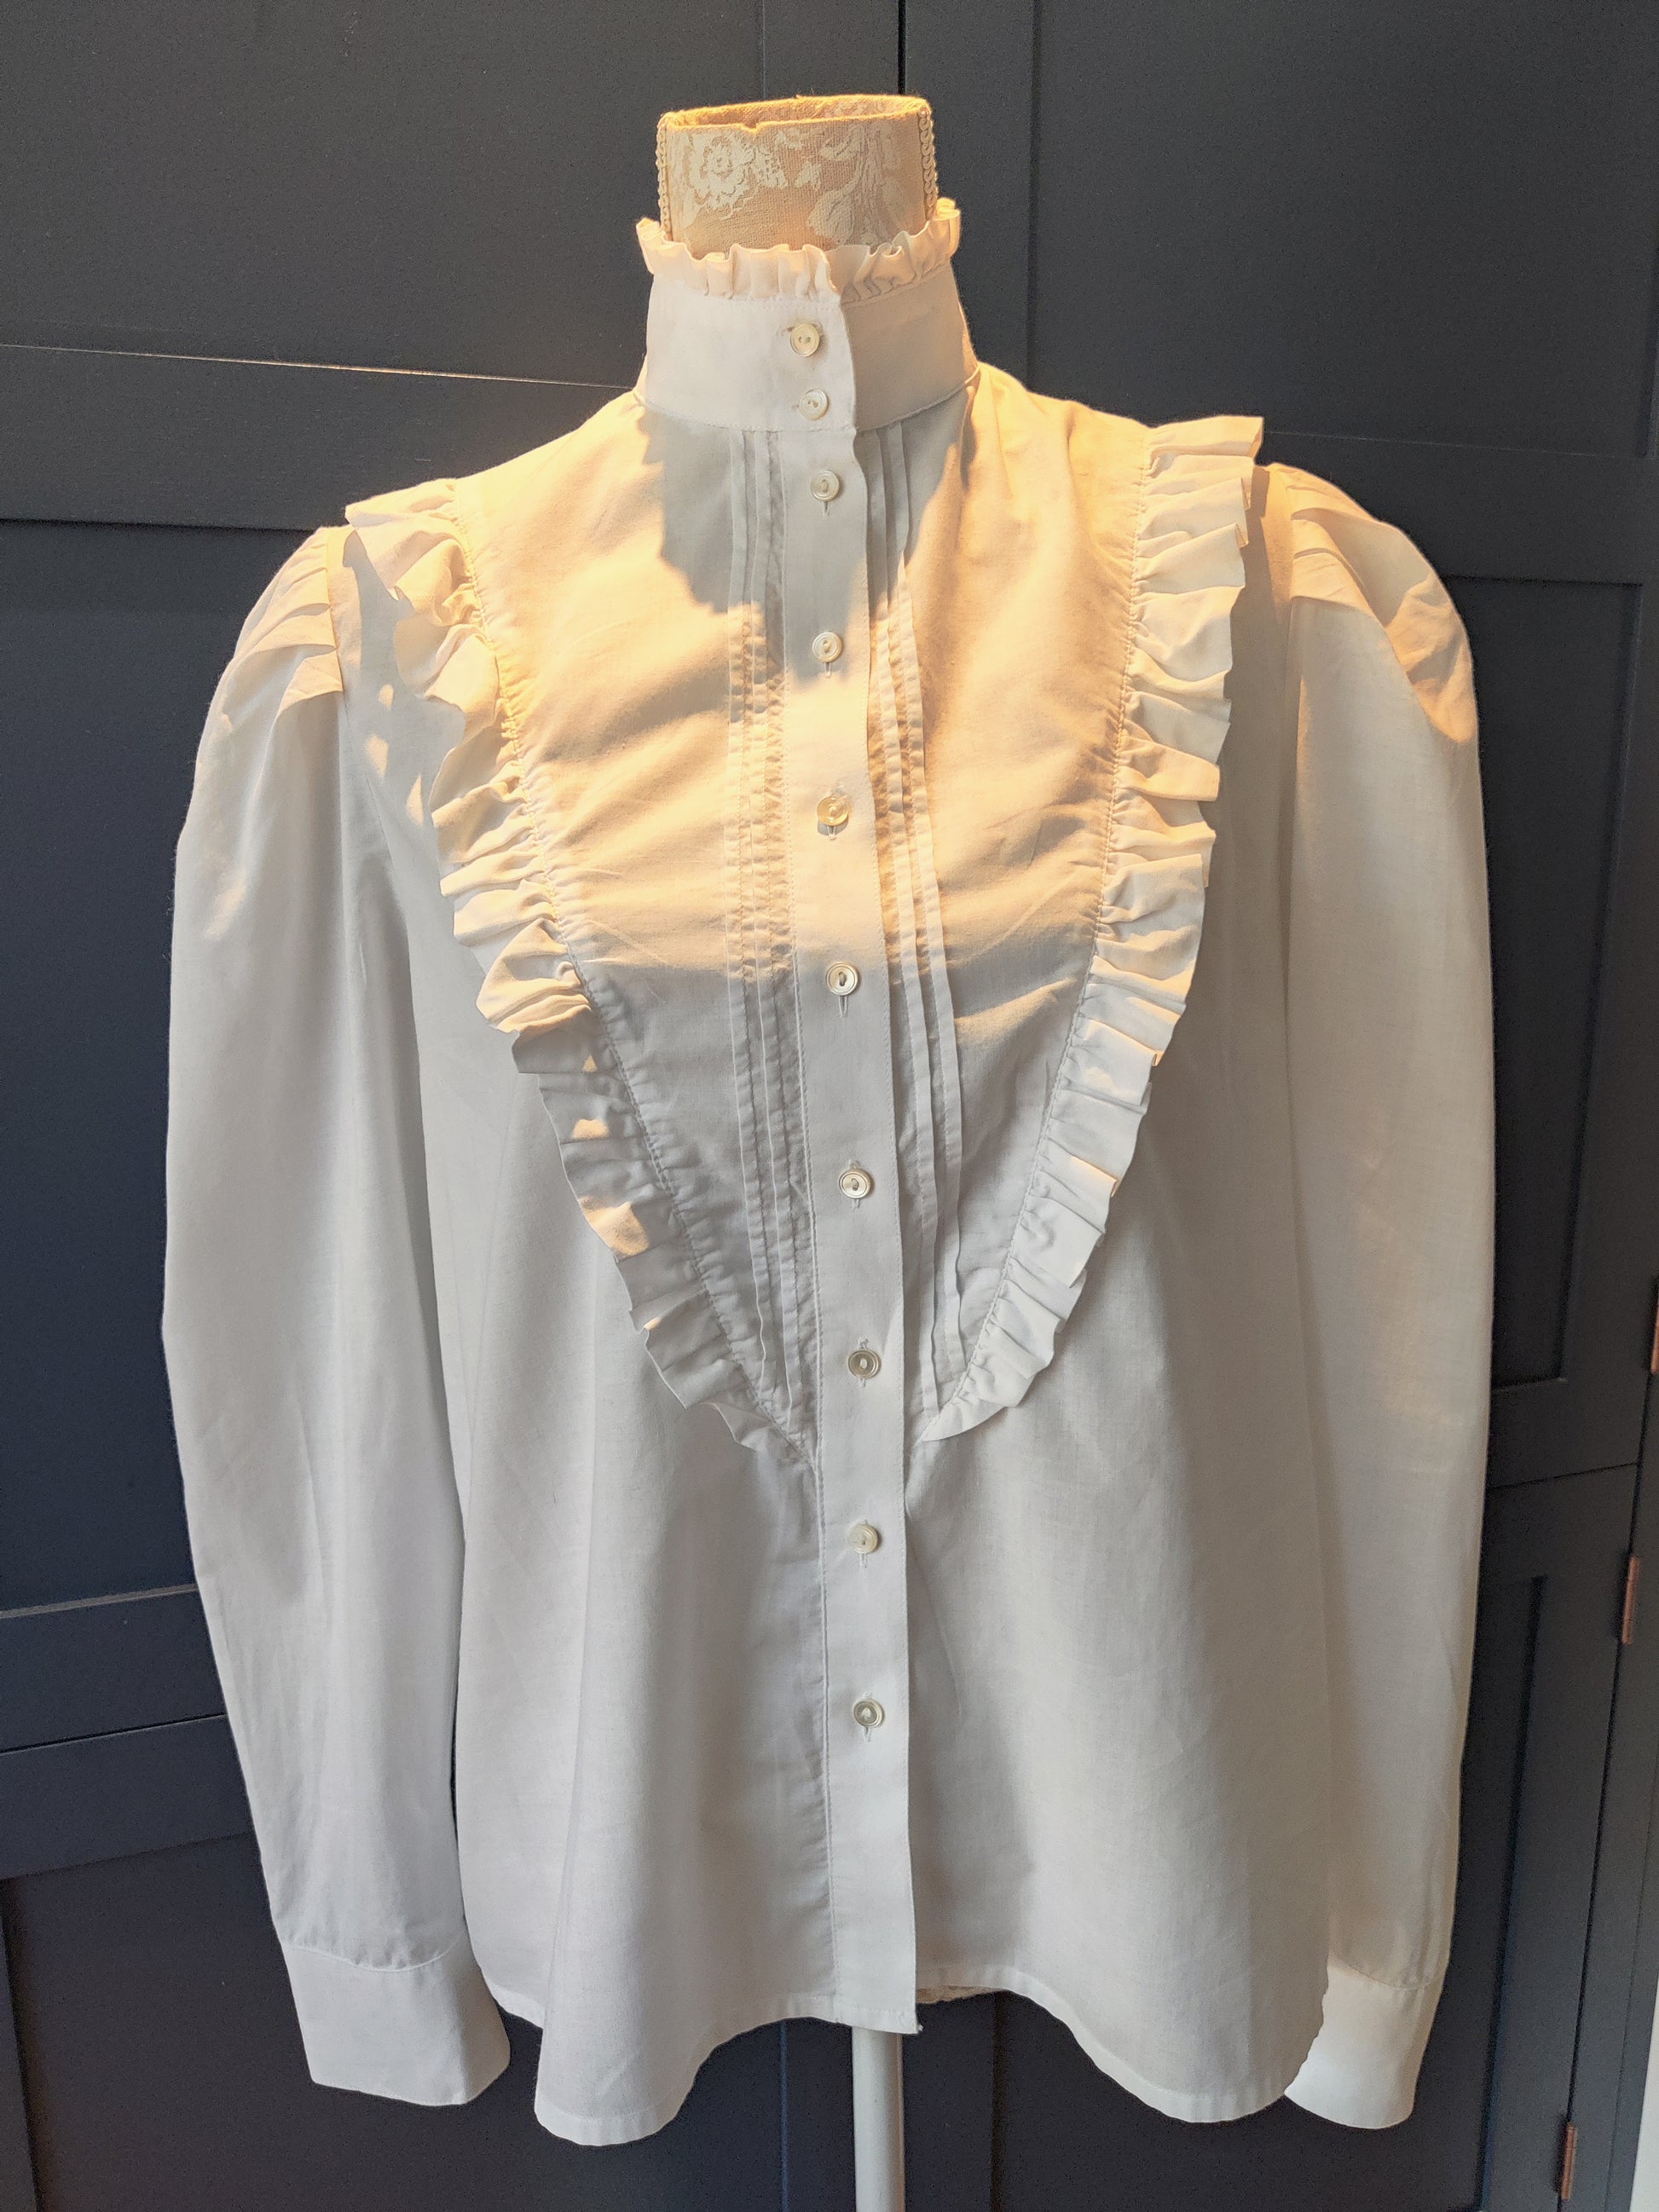 Beautiful vintage Laura Ashley edwardian style blouse size 14.